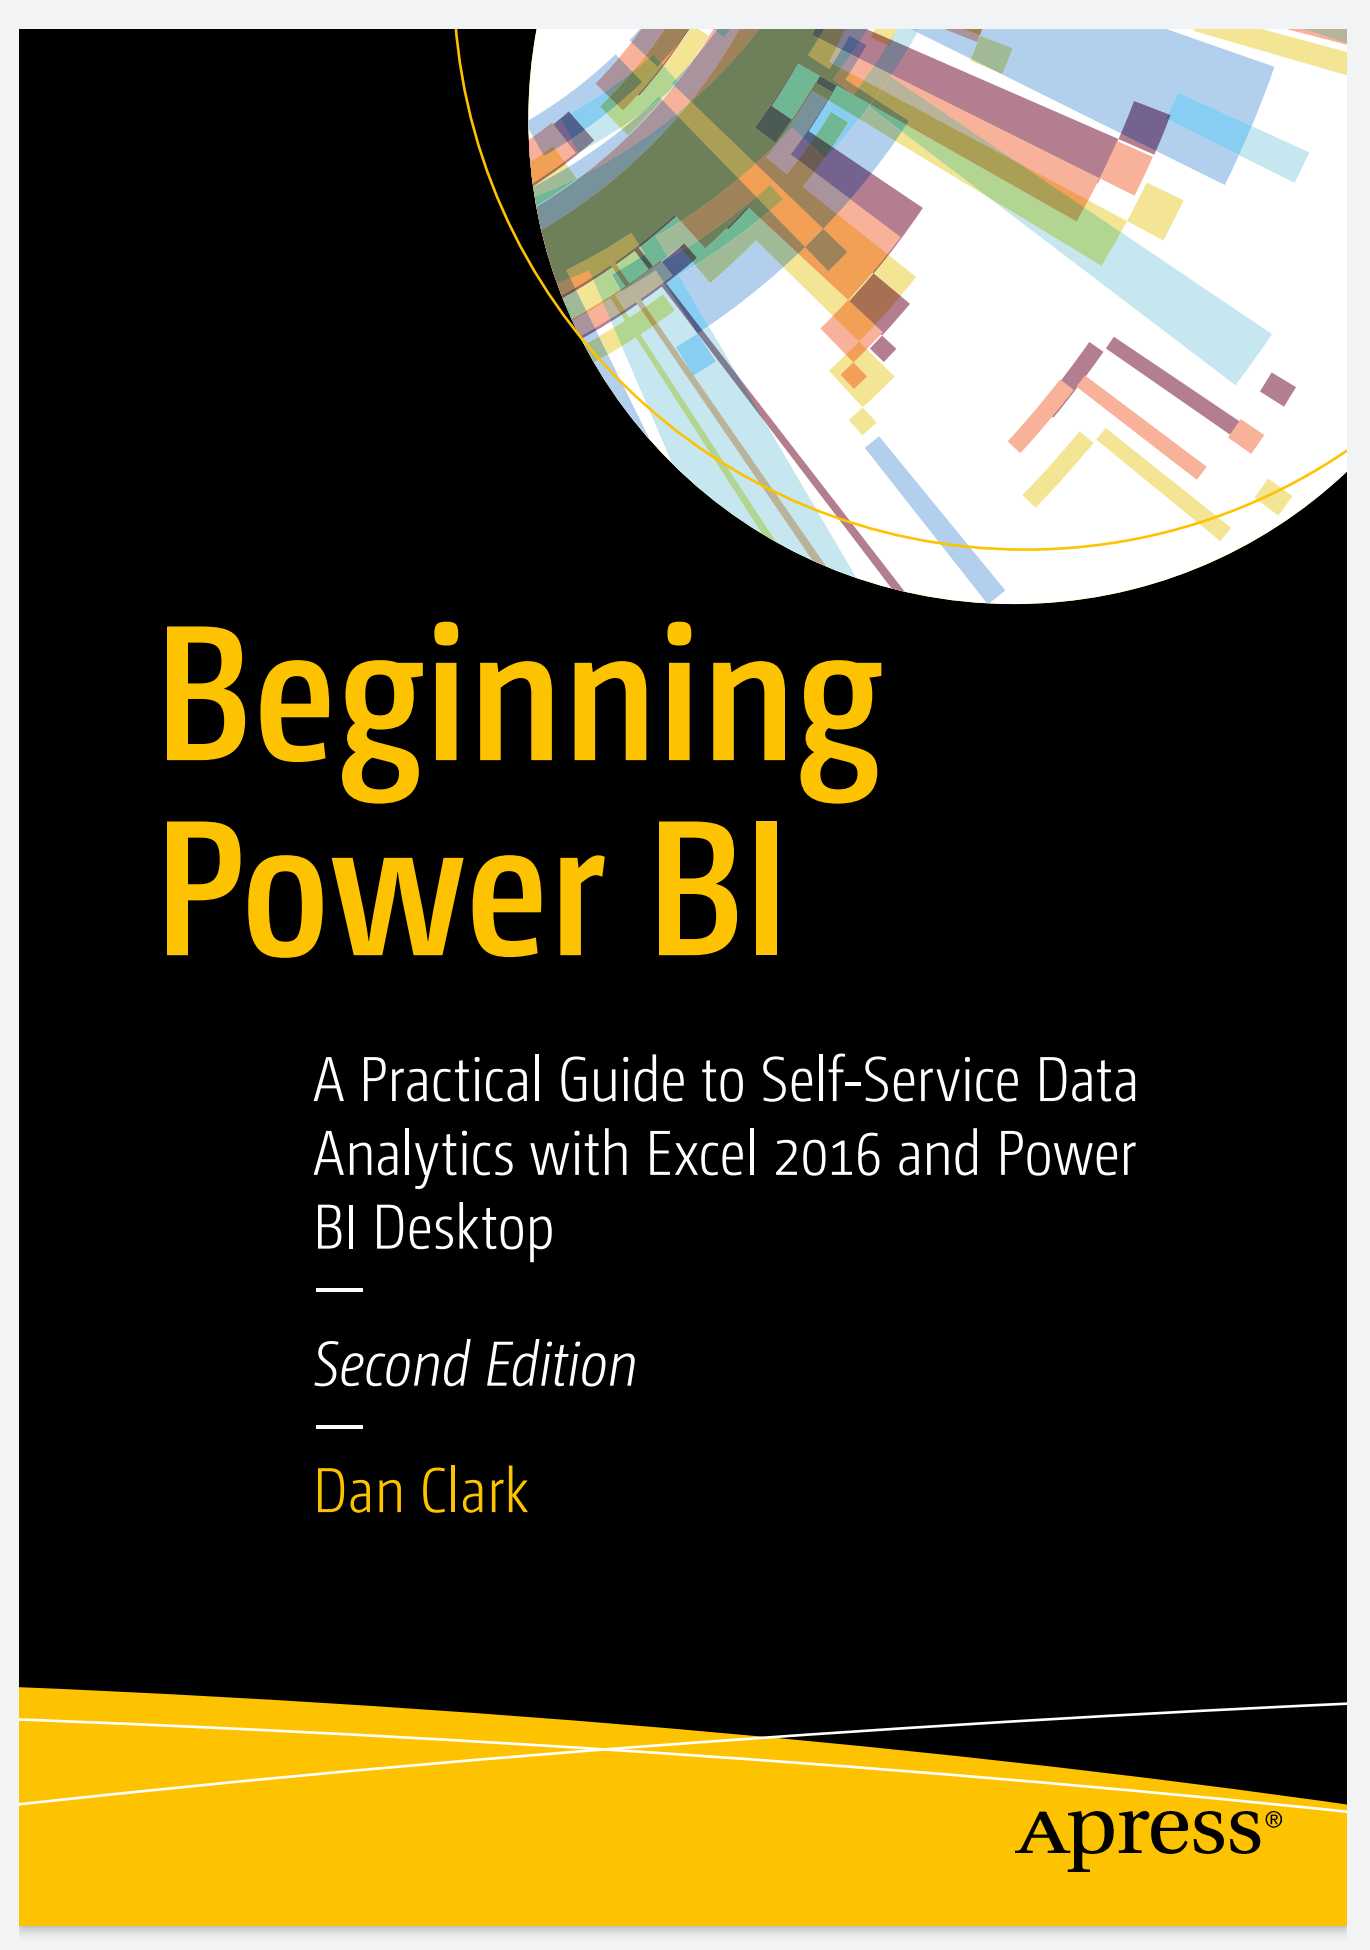 Beginning Power BI, 2nd Edition Free PDF Download